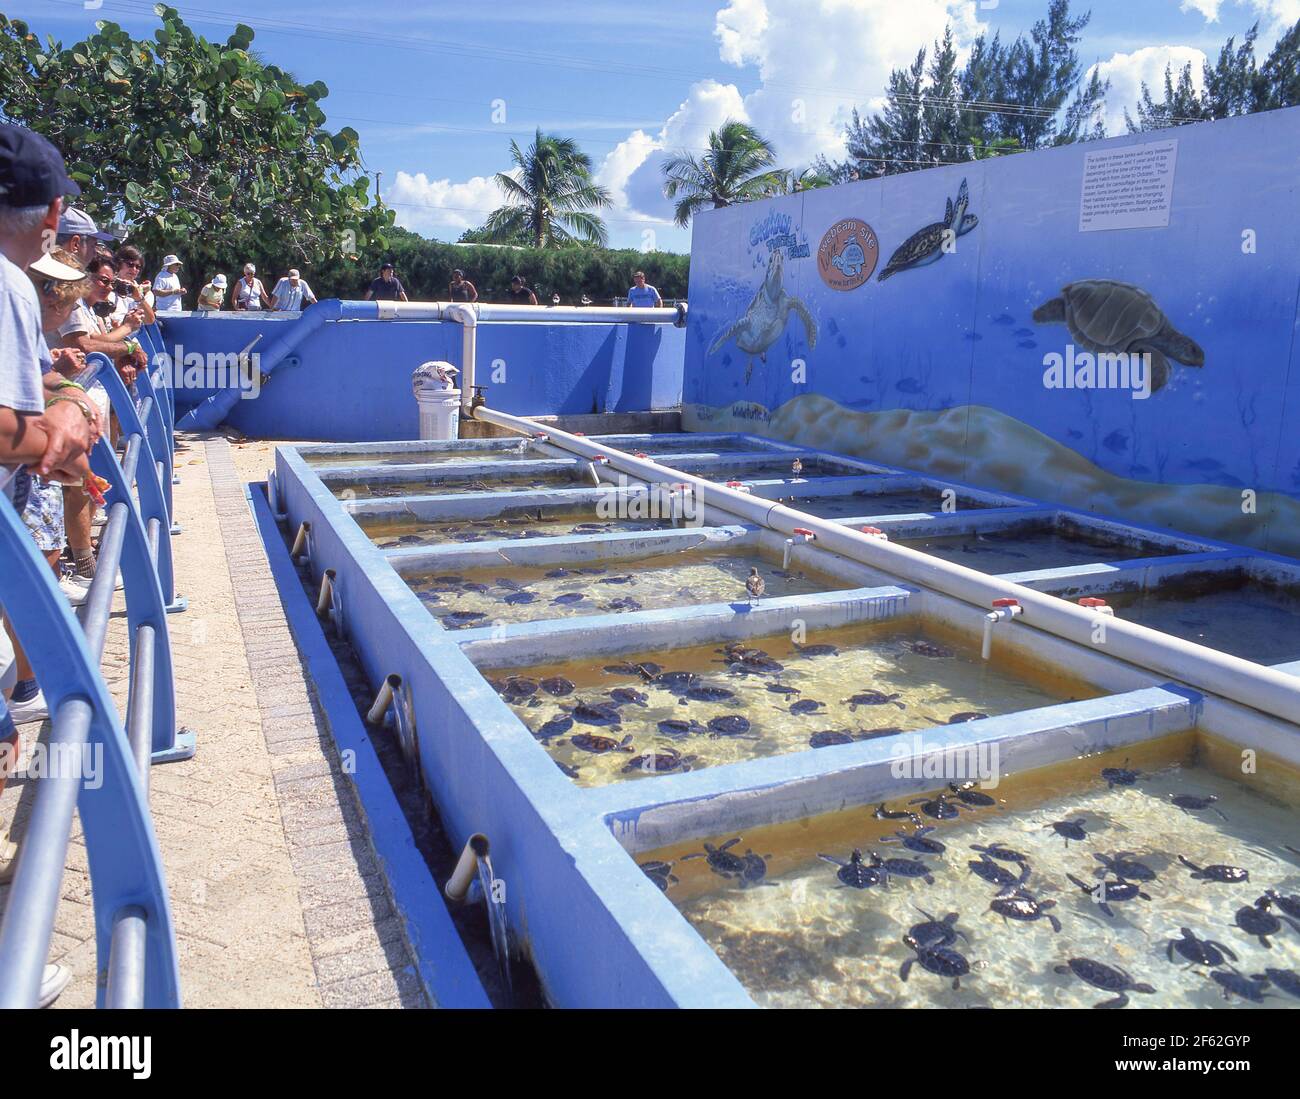 Piscines d'élevage à Cayman Turtle Farm, West Bay, les îles Caïmans, Antilles, Caraïbes Banque D'Images